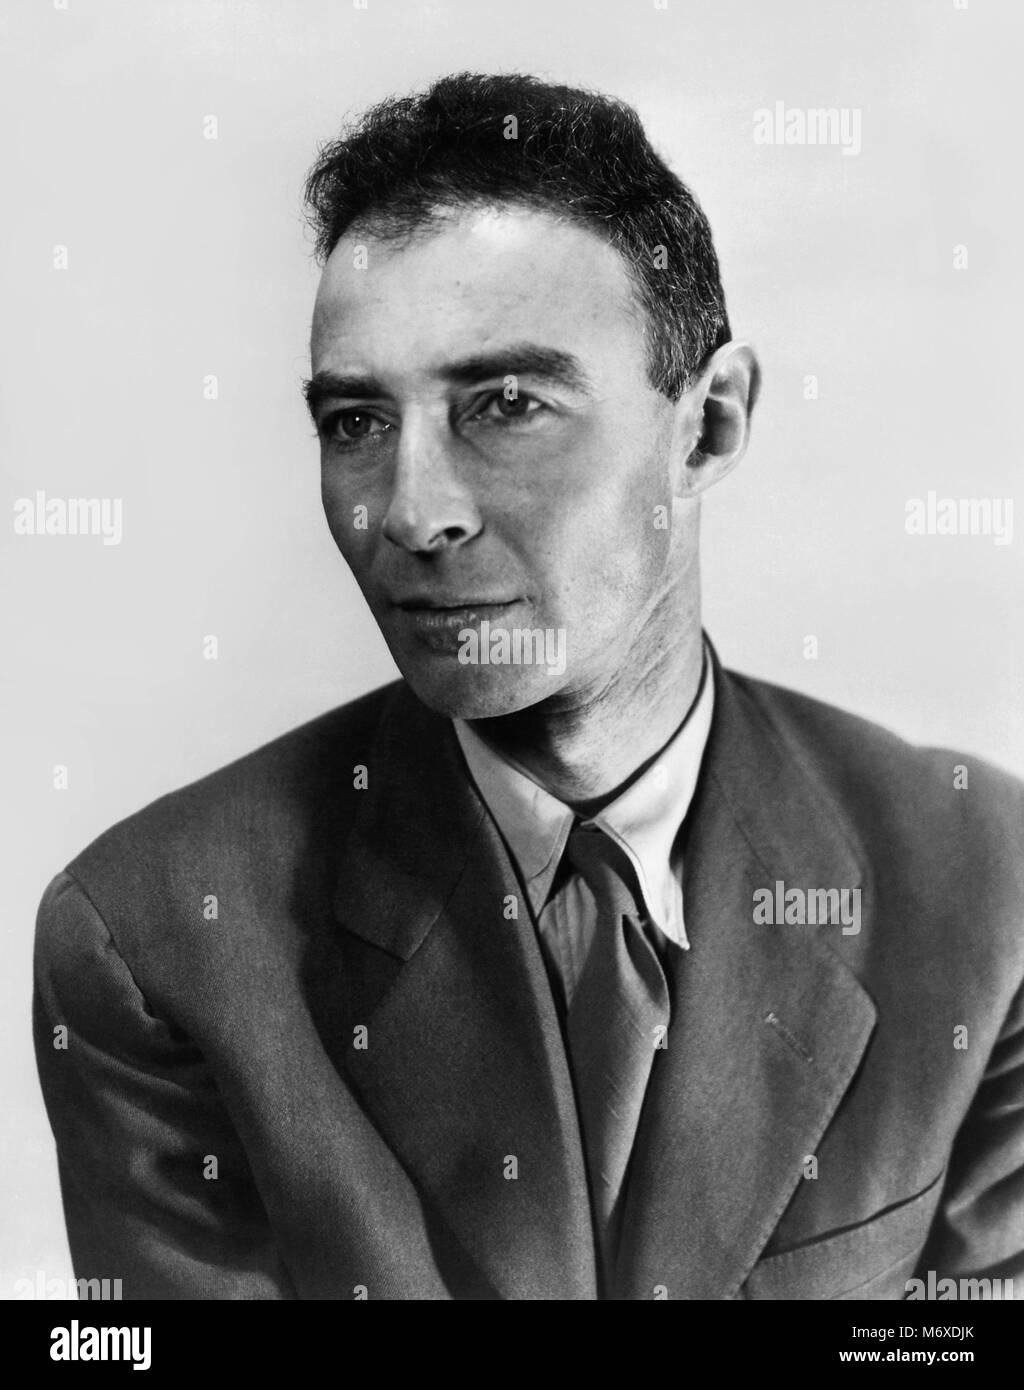 J. Robert Oppenheimer (1904-1967) était un physicien et un participant au projet Manhattan de développement de la bombe atomique pendant la Deuxième Guerre mondiale comme chef de guerre du laboratoire de Los Alamos au Nouveau Mexique. Banque D'Images